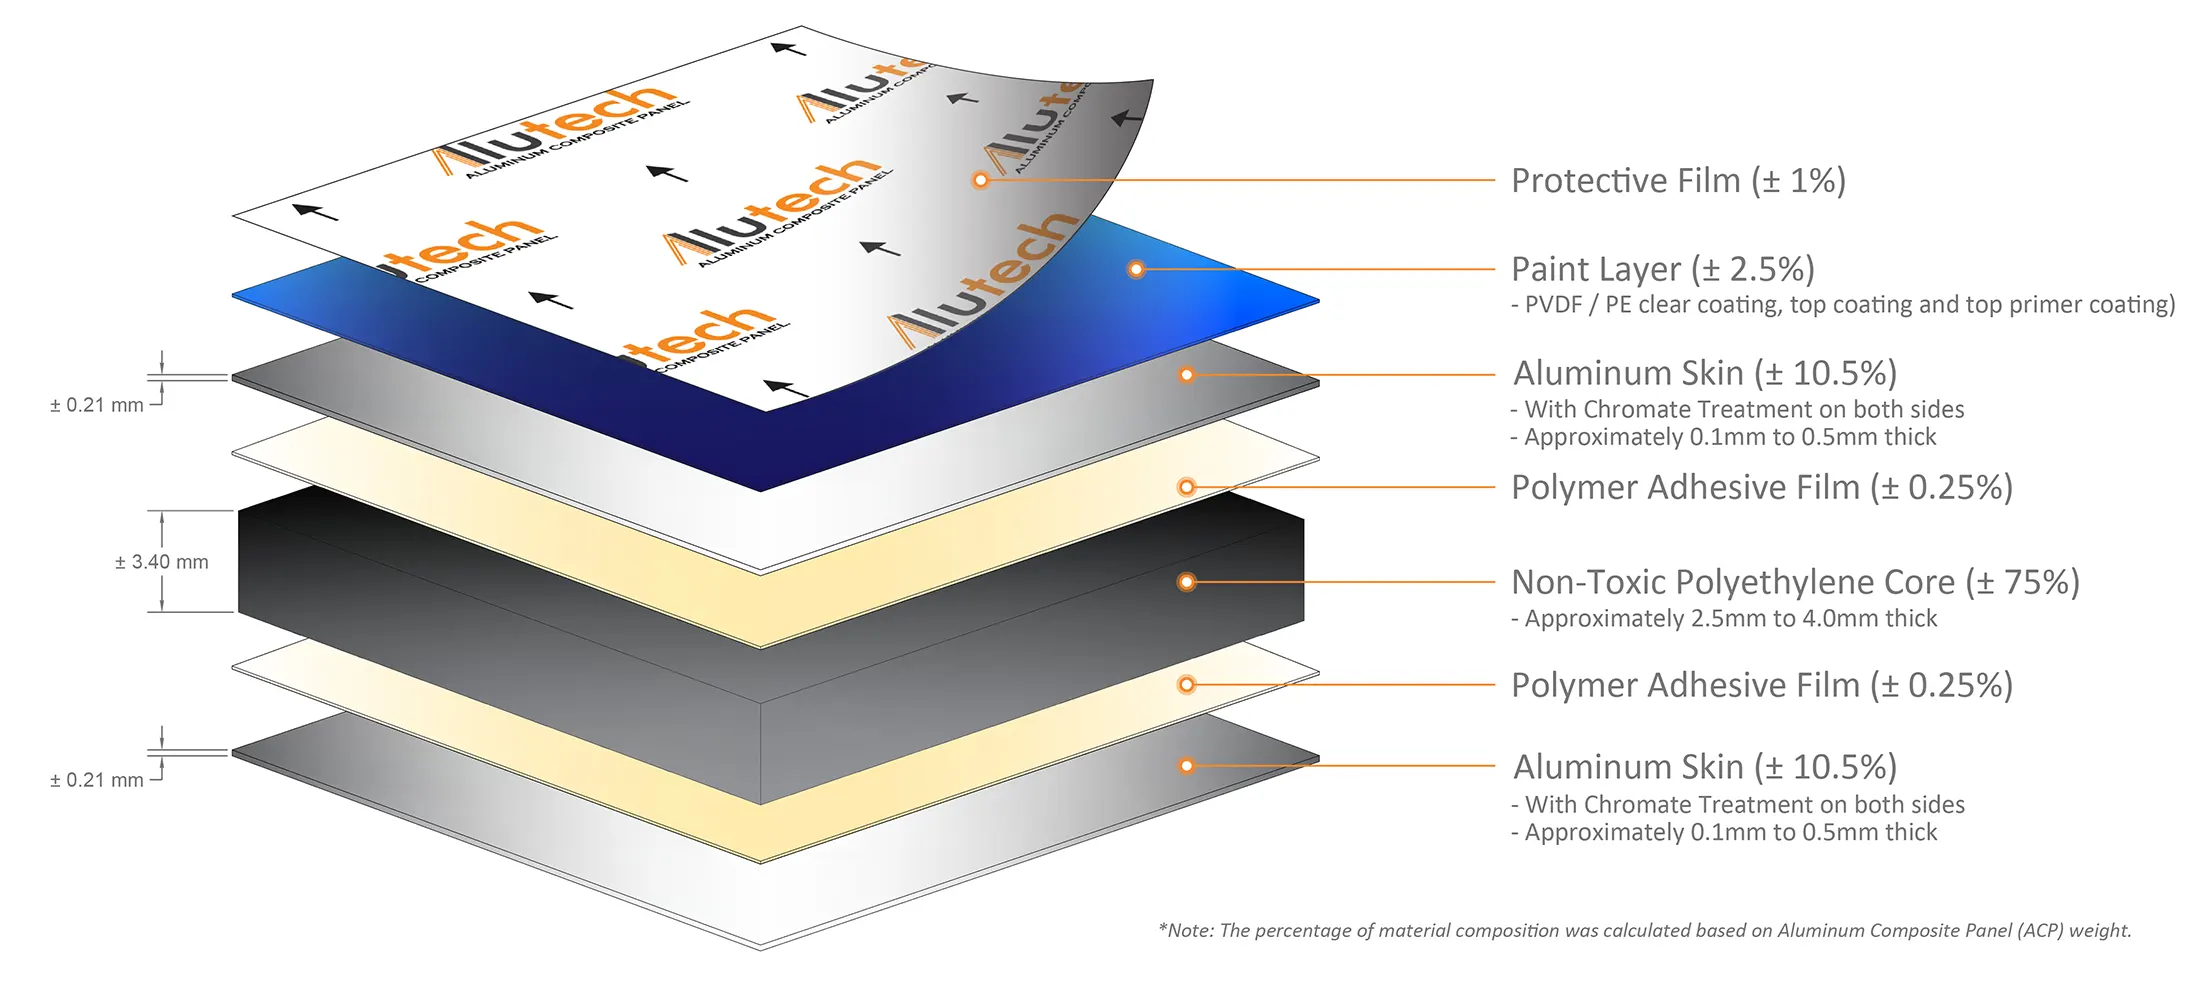 Aluminum Composite Panel Layers-PVDF